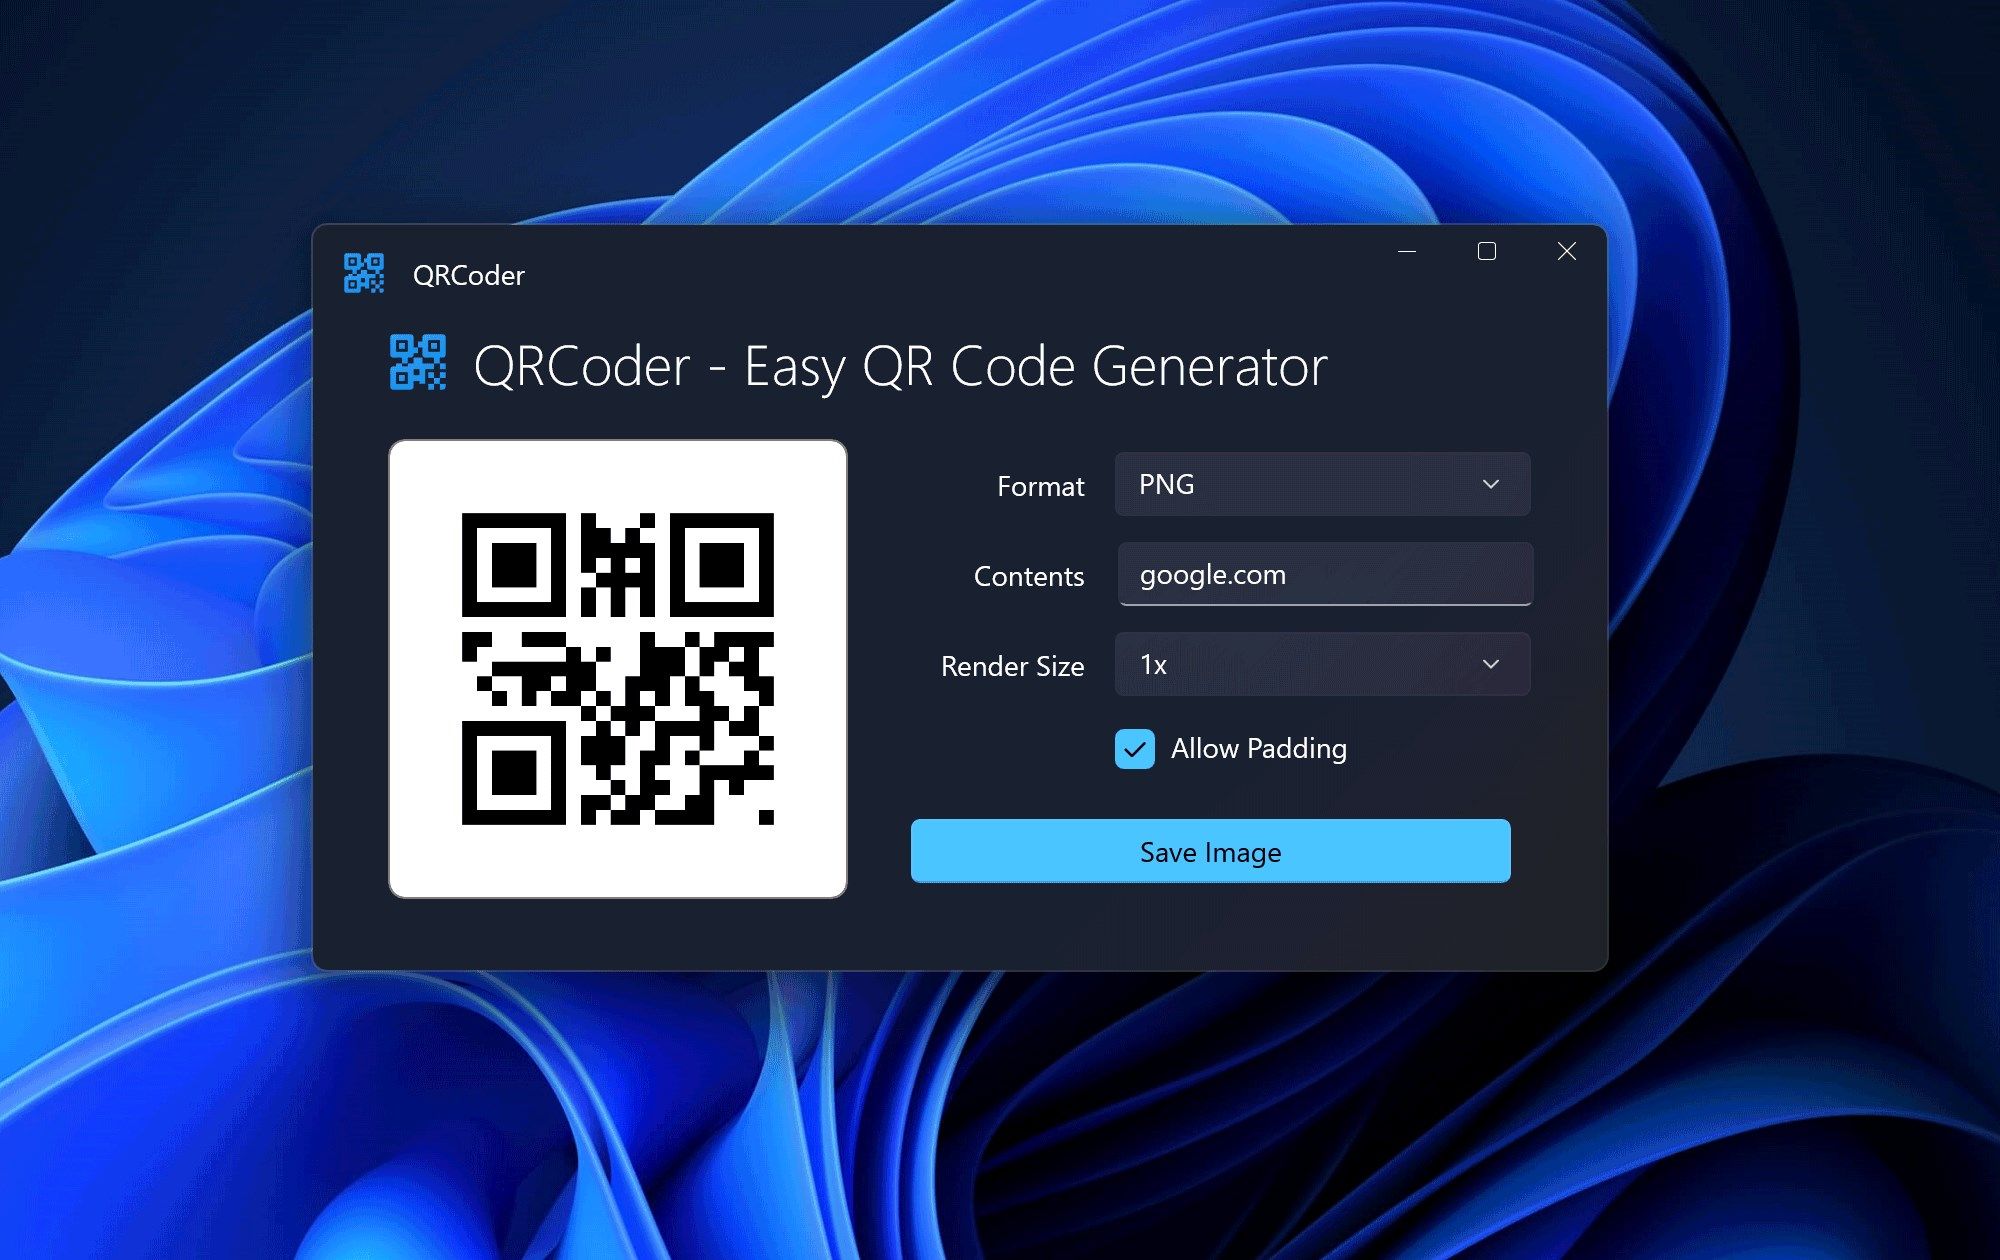 QRCoder - Easy QR Code Generator